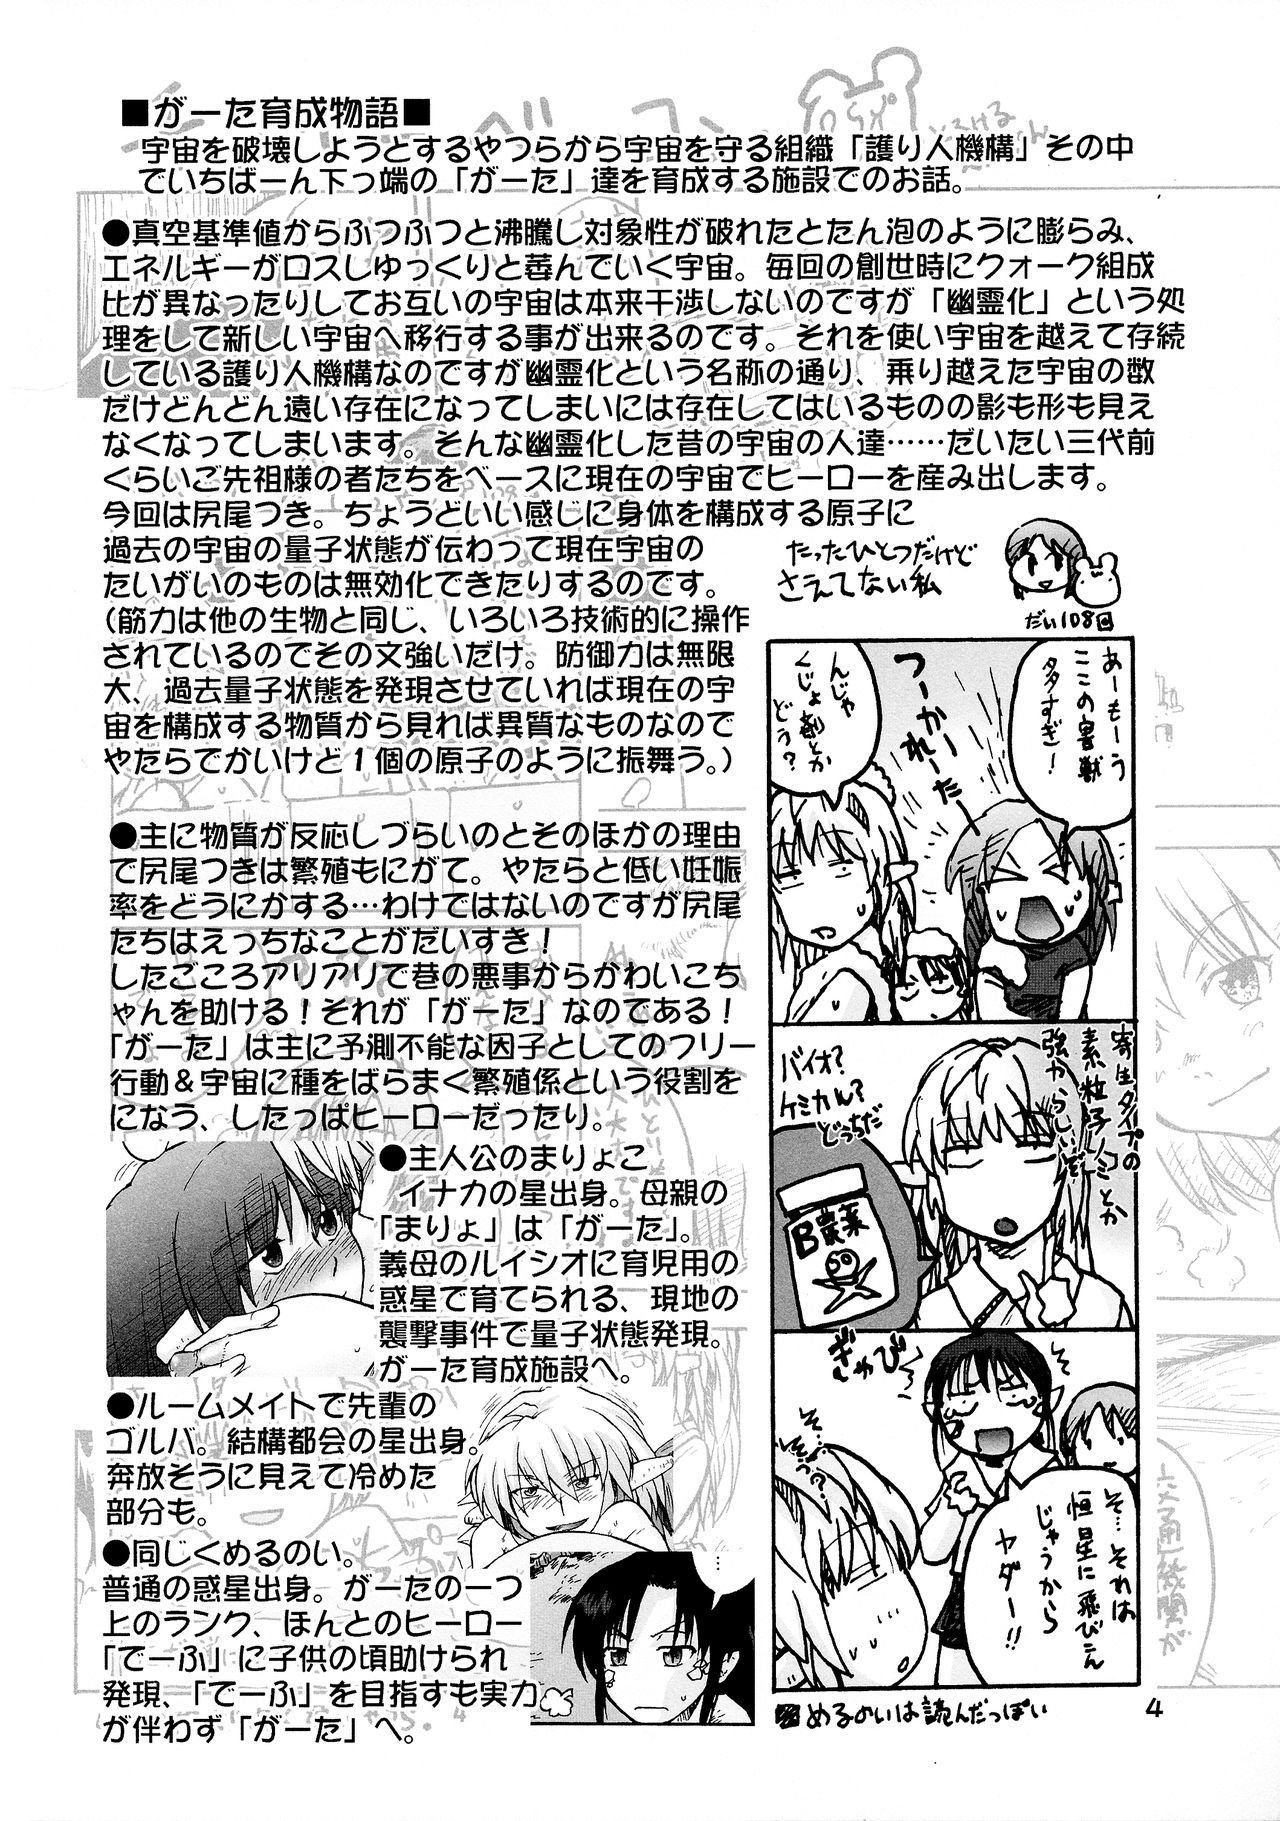 [巨大軌道要塞強襲 (神尾96)] 漫画チョコビスチェ Vol.4